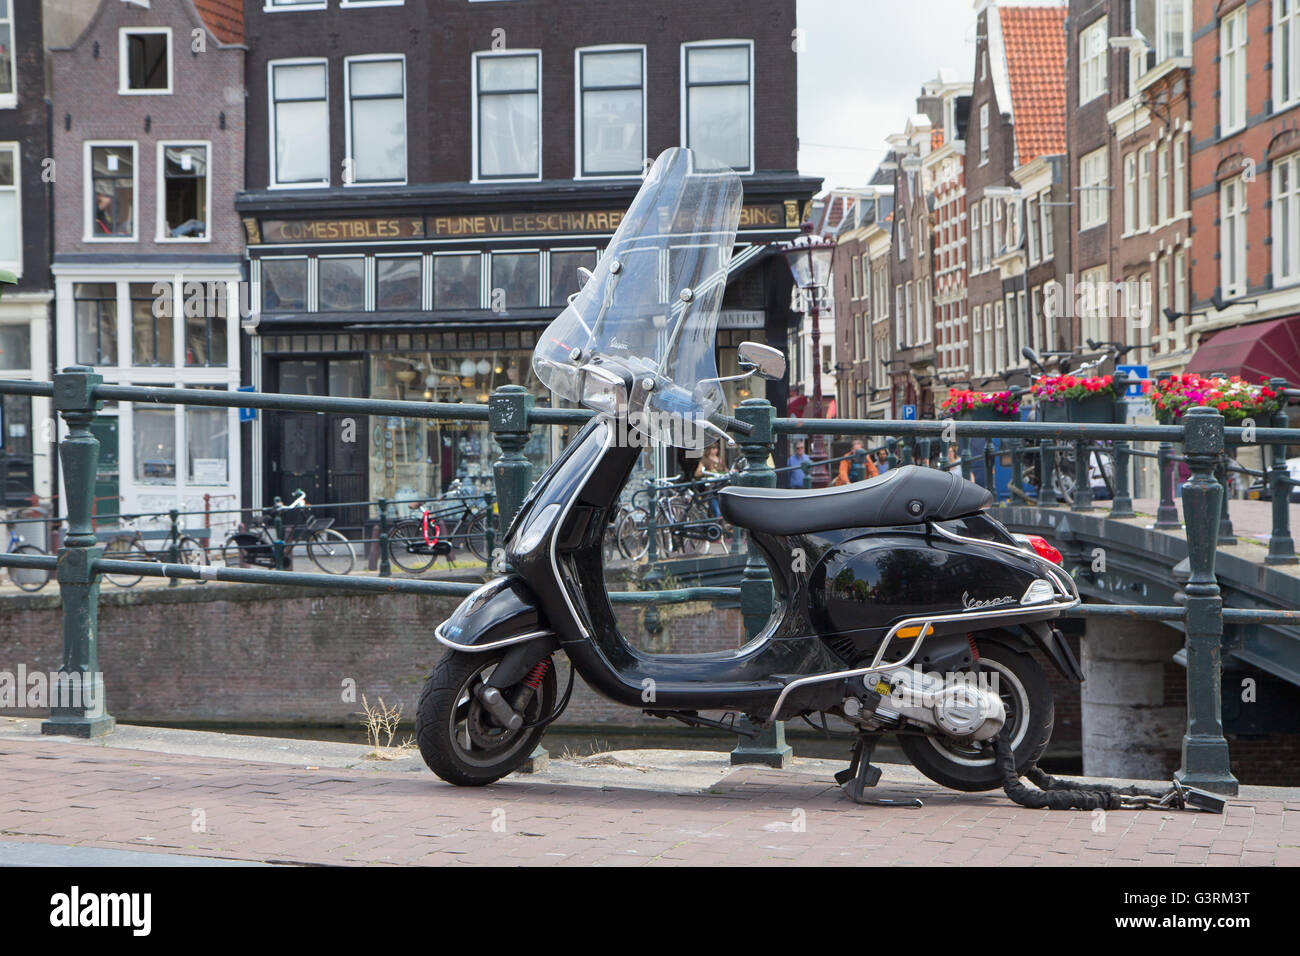 The Vespa in Amsterdam Photo -